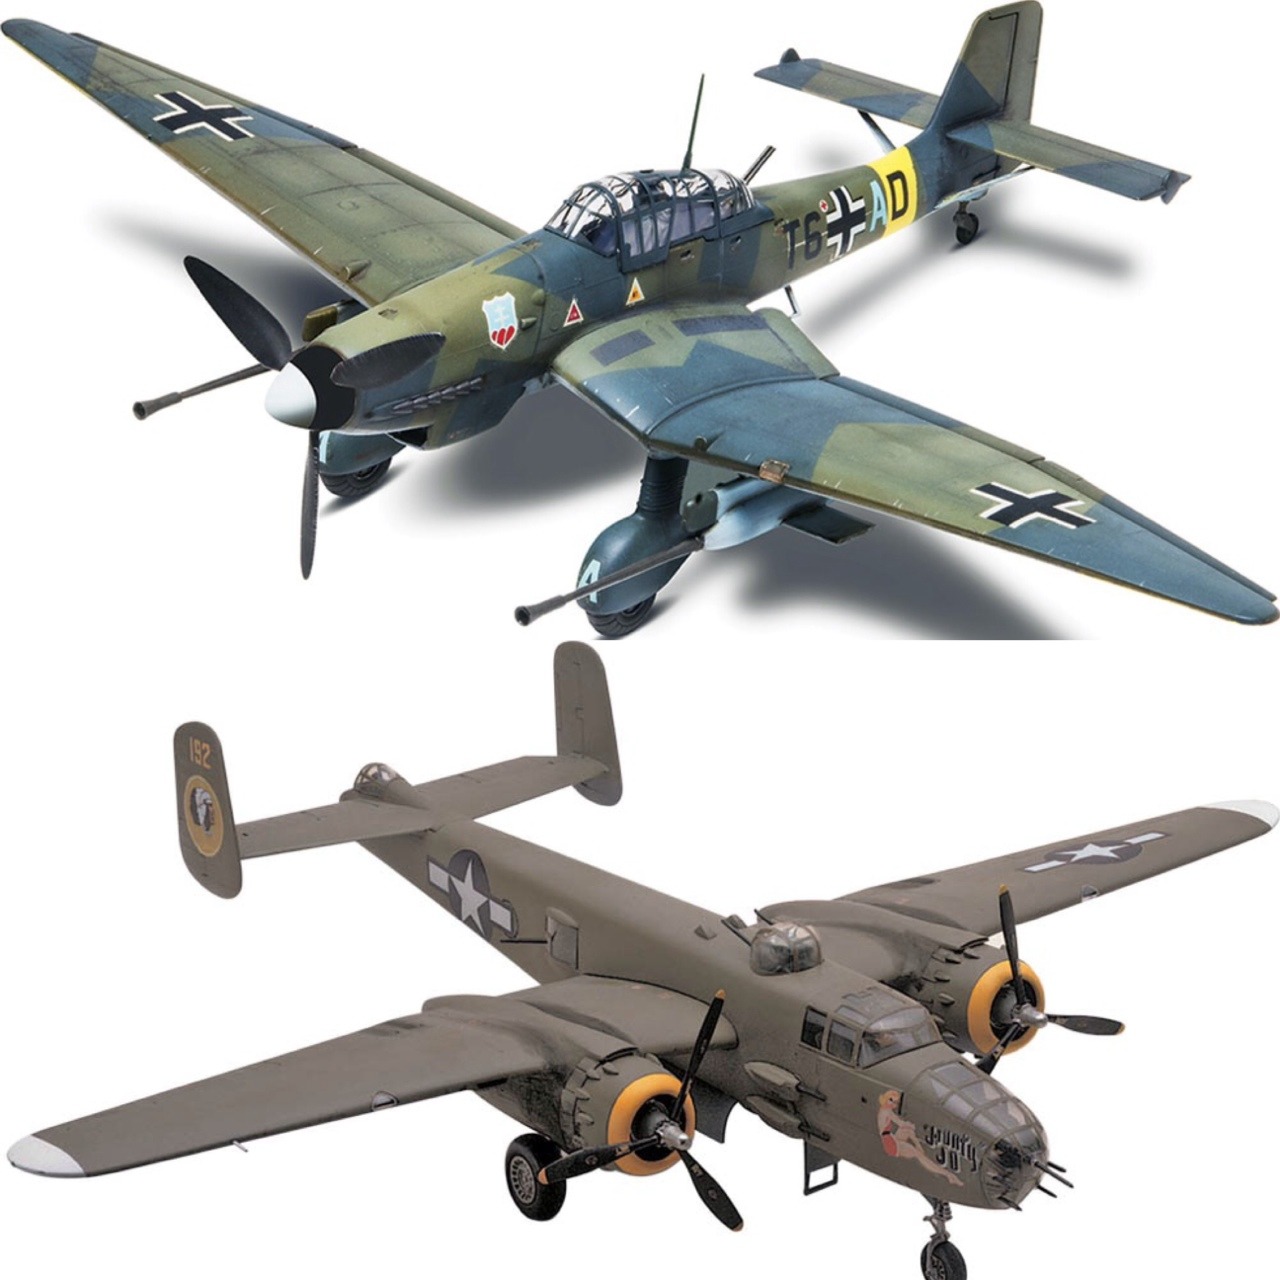 Ww2 Model Airplane Kits - Image to u